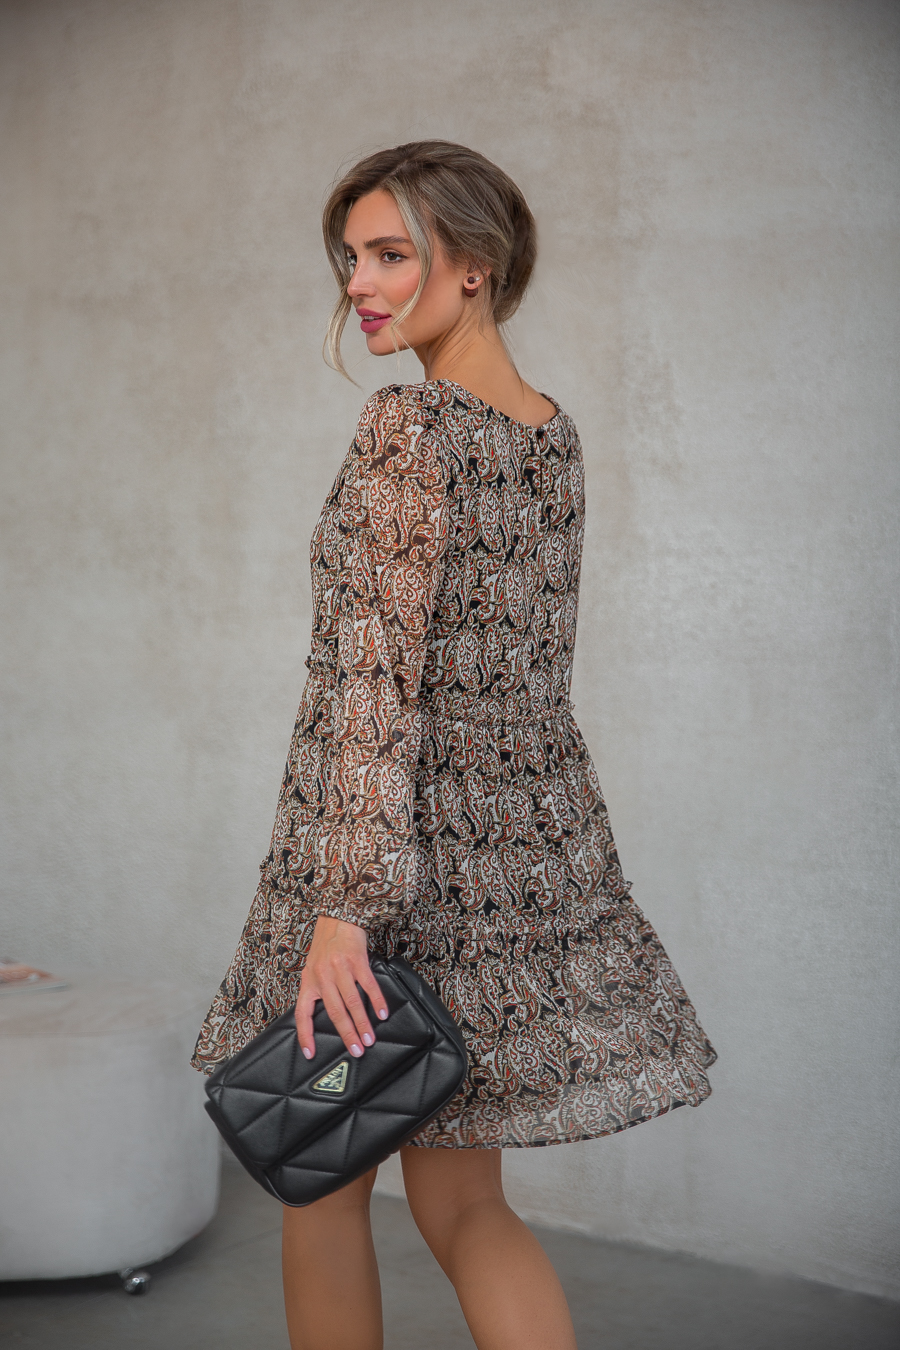 Аллисте.3 платье свободного кроя из фактурного шифона в изящный рисунок пейсли от Ритини